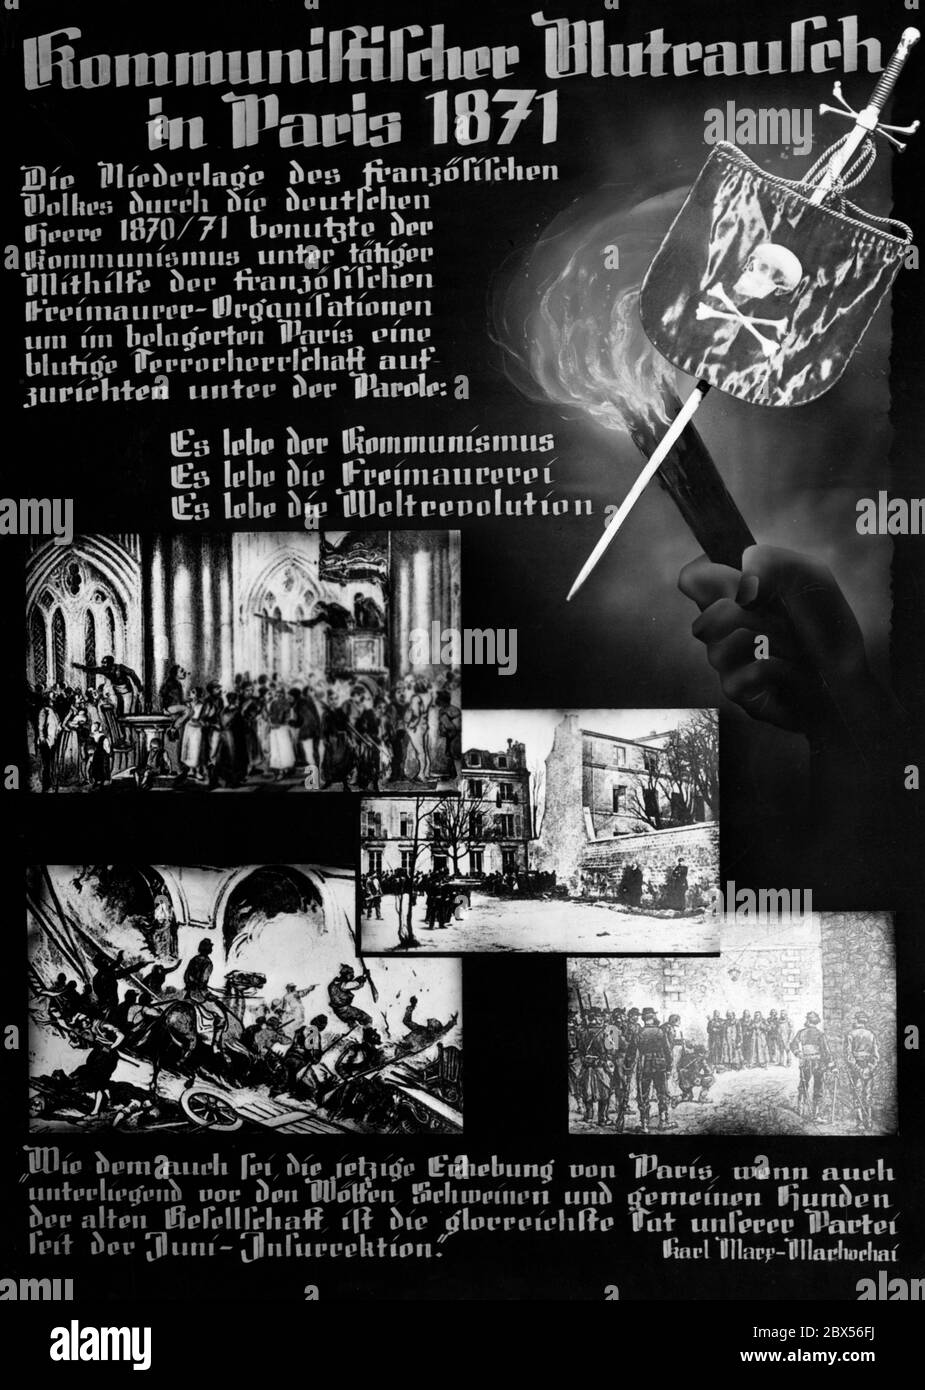 HistoricalFindings Photo Bolschewismus heisst die Welt im Blut ersäufen,World War I,WWI,Germany,Wolf,1919